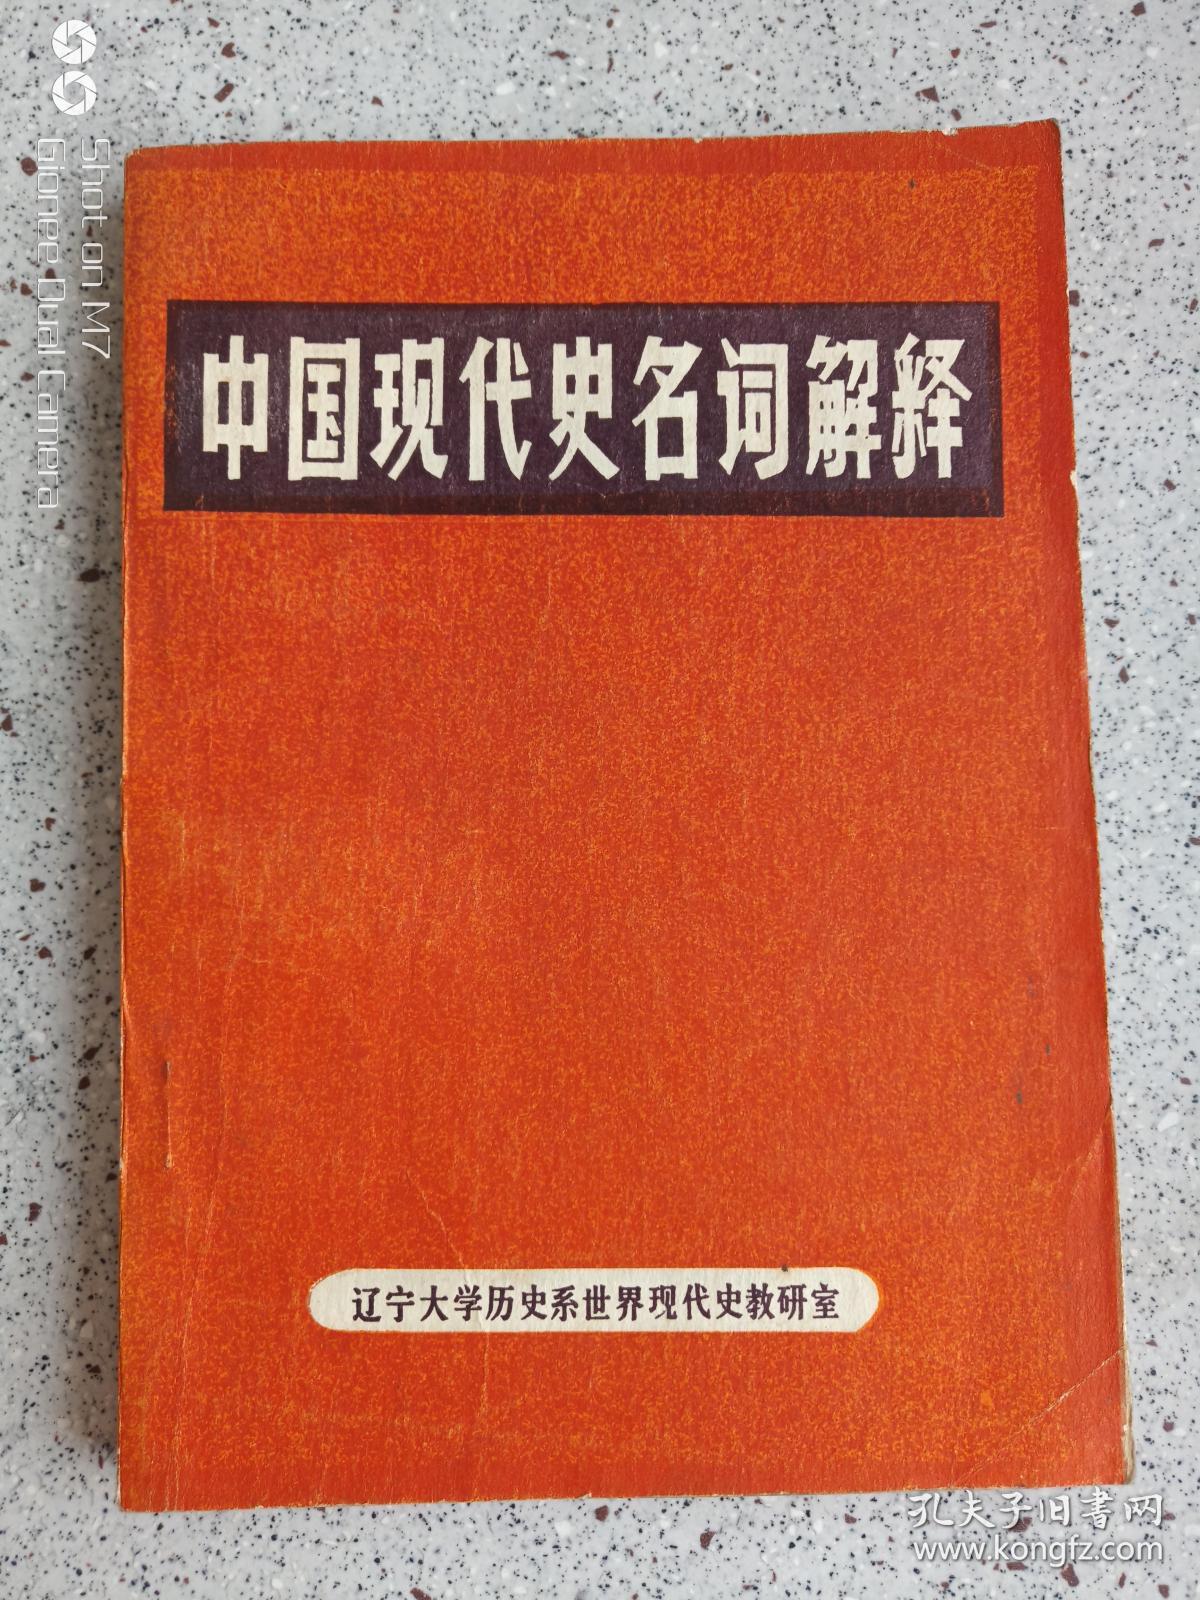 中国现代史名词解释下册1982年